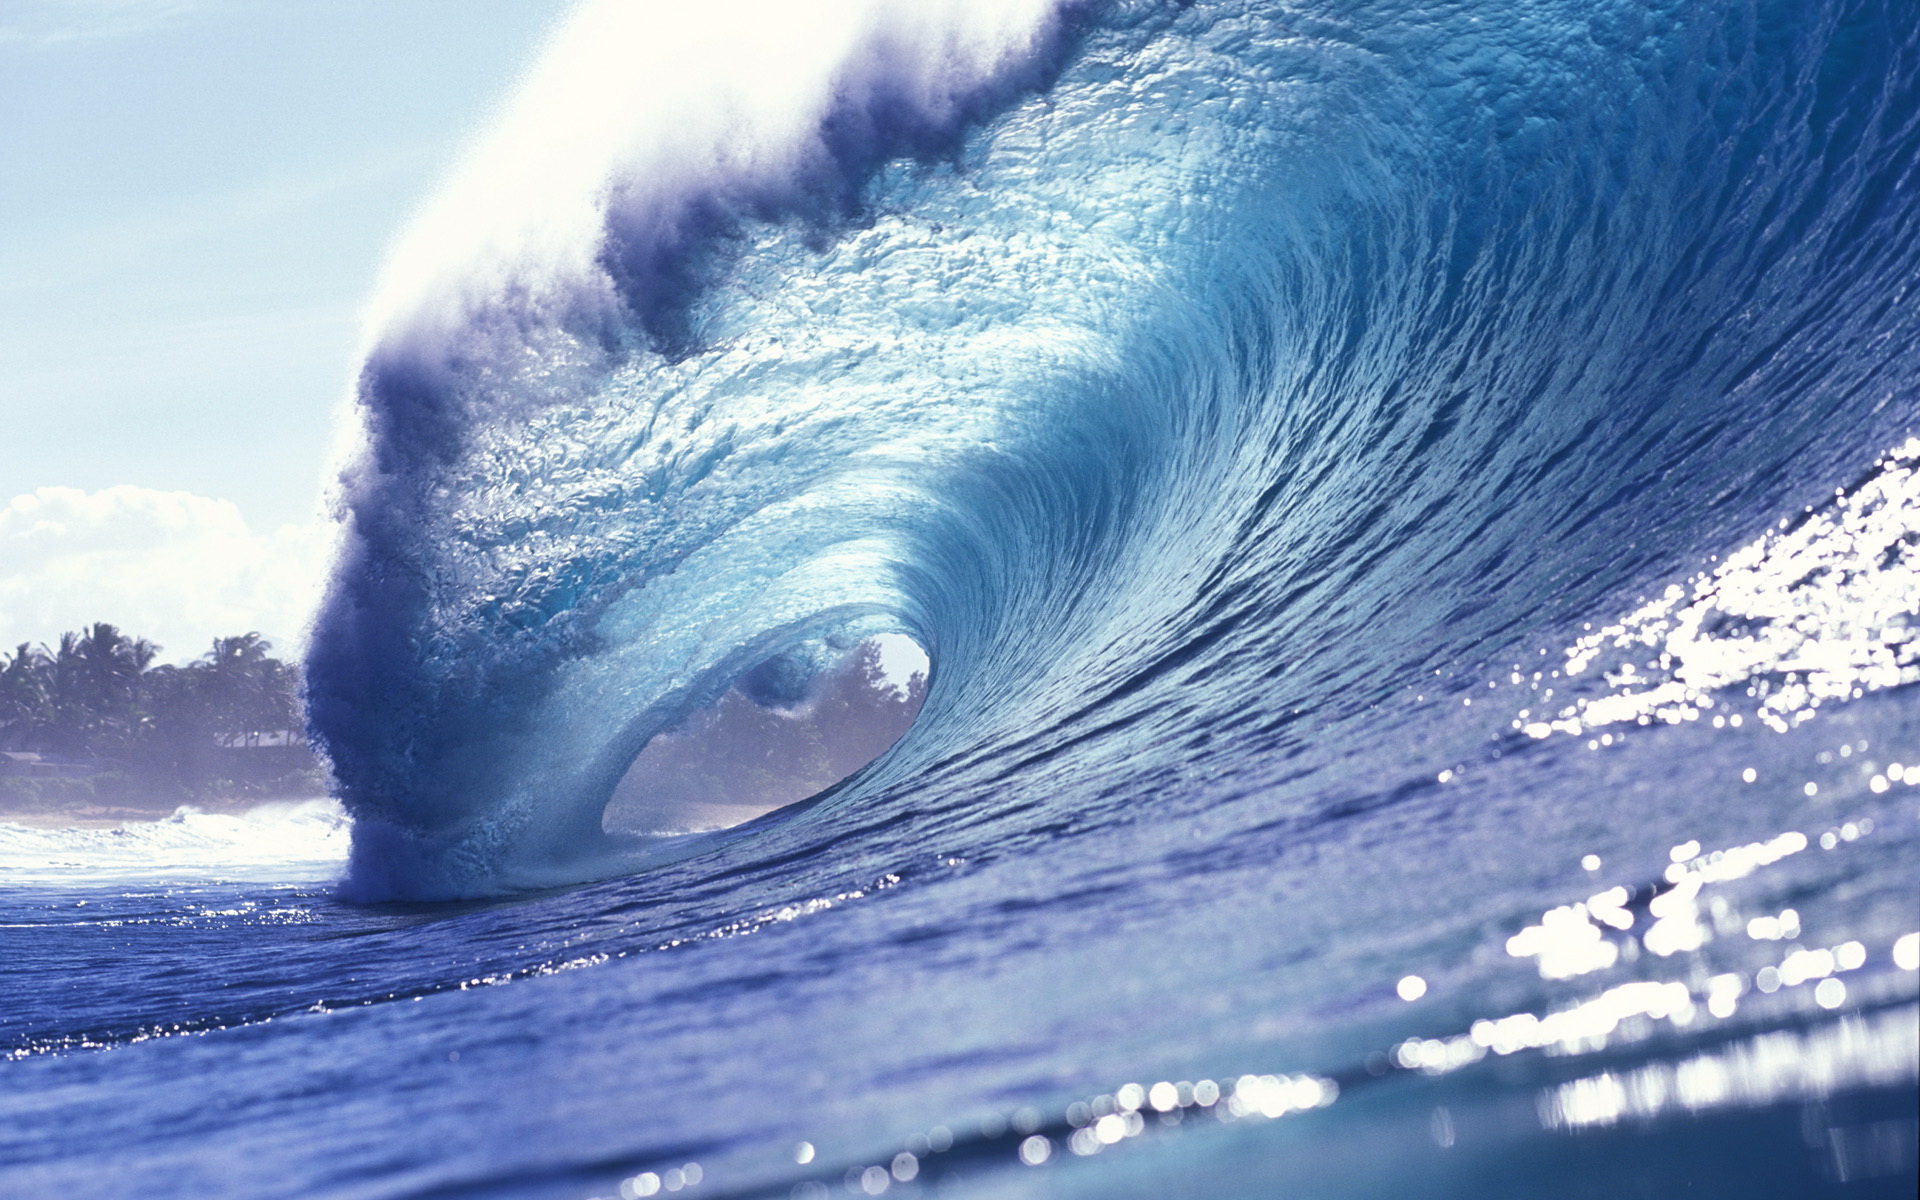 Với Wave HD Wallpaper, bạn sẽ có một trải nghiệm tuyệt vời với những hình ảnh sóng lớn và đẹp miễn chê. Độ phân giải tuyệt vời sẽ khiến hình ảnh trở lên sống động và chân thật hơn. Hãy để tâm trí bạn thư giãn với đại dương mênh mông.